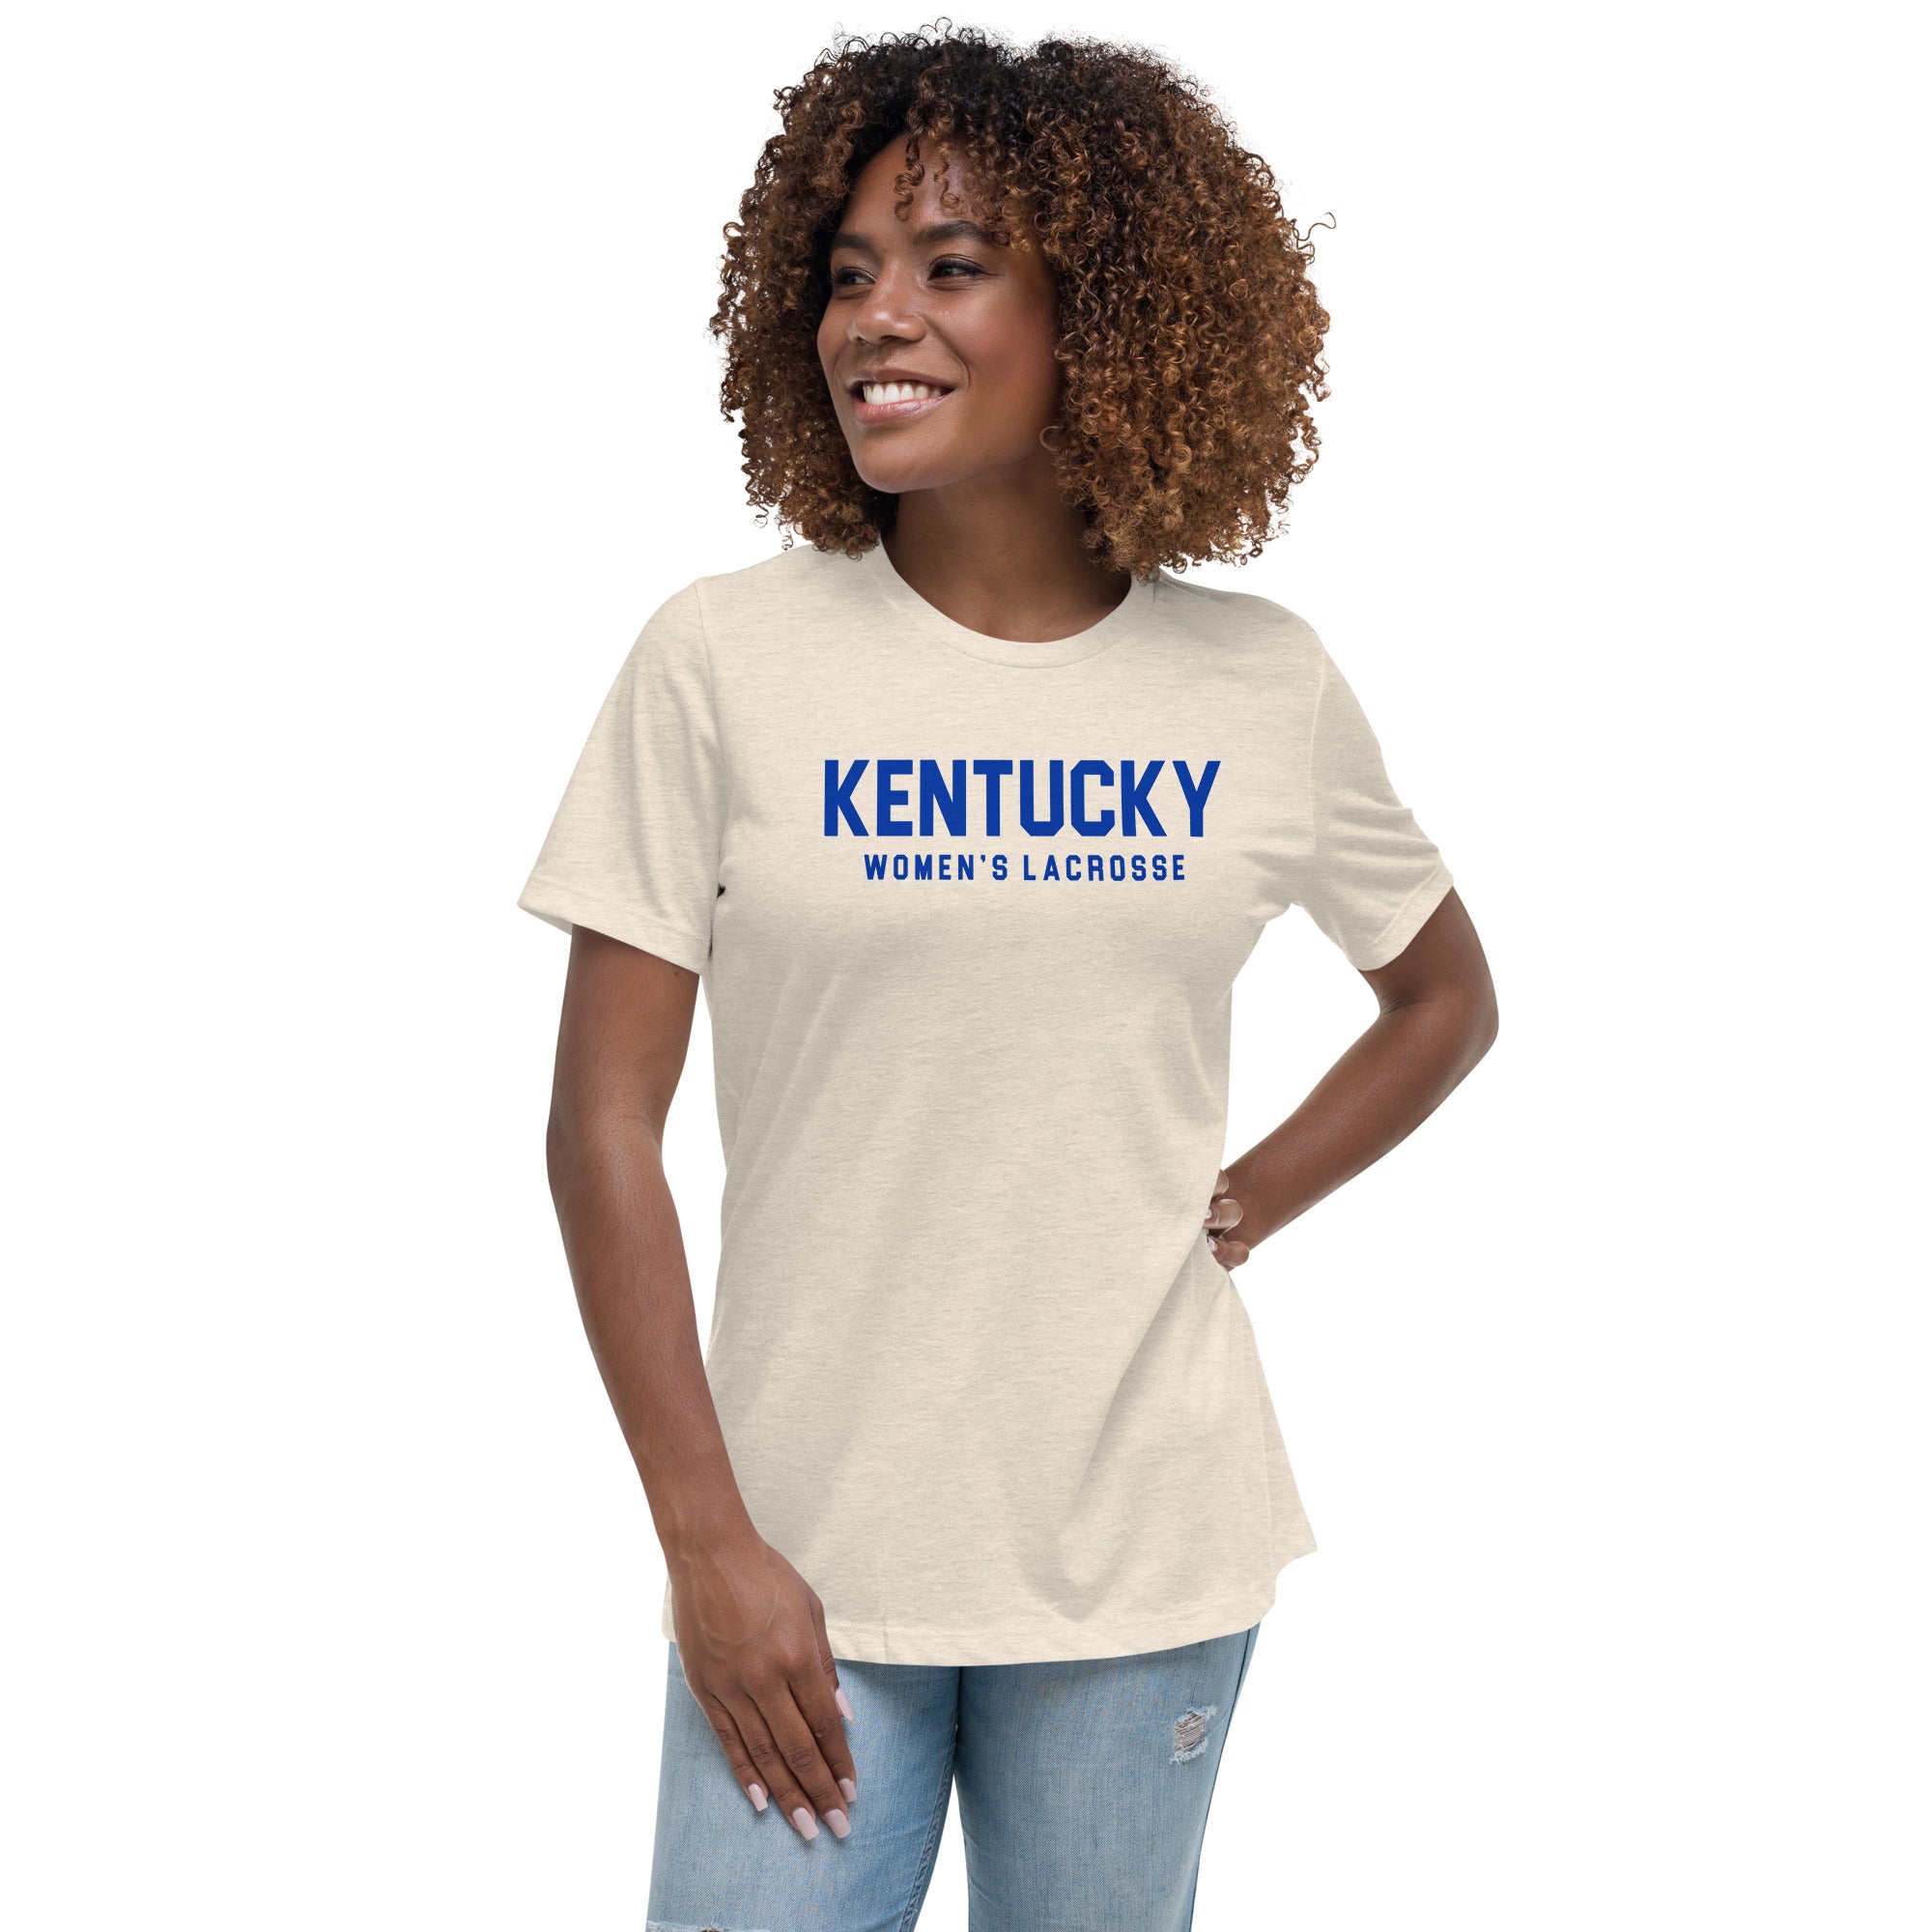 Kentucky Women's Relaxed T-Shirt